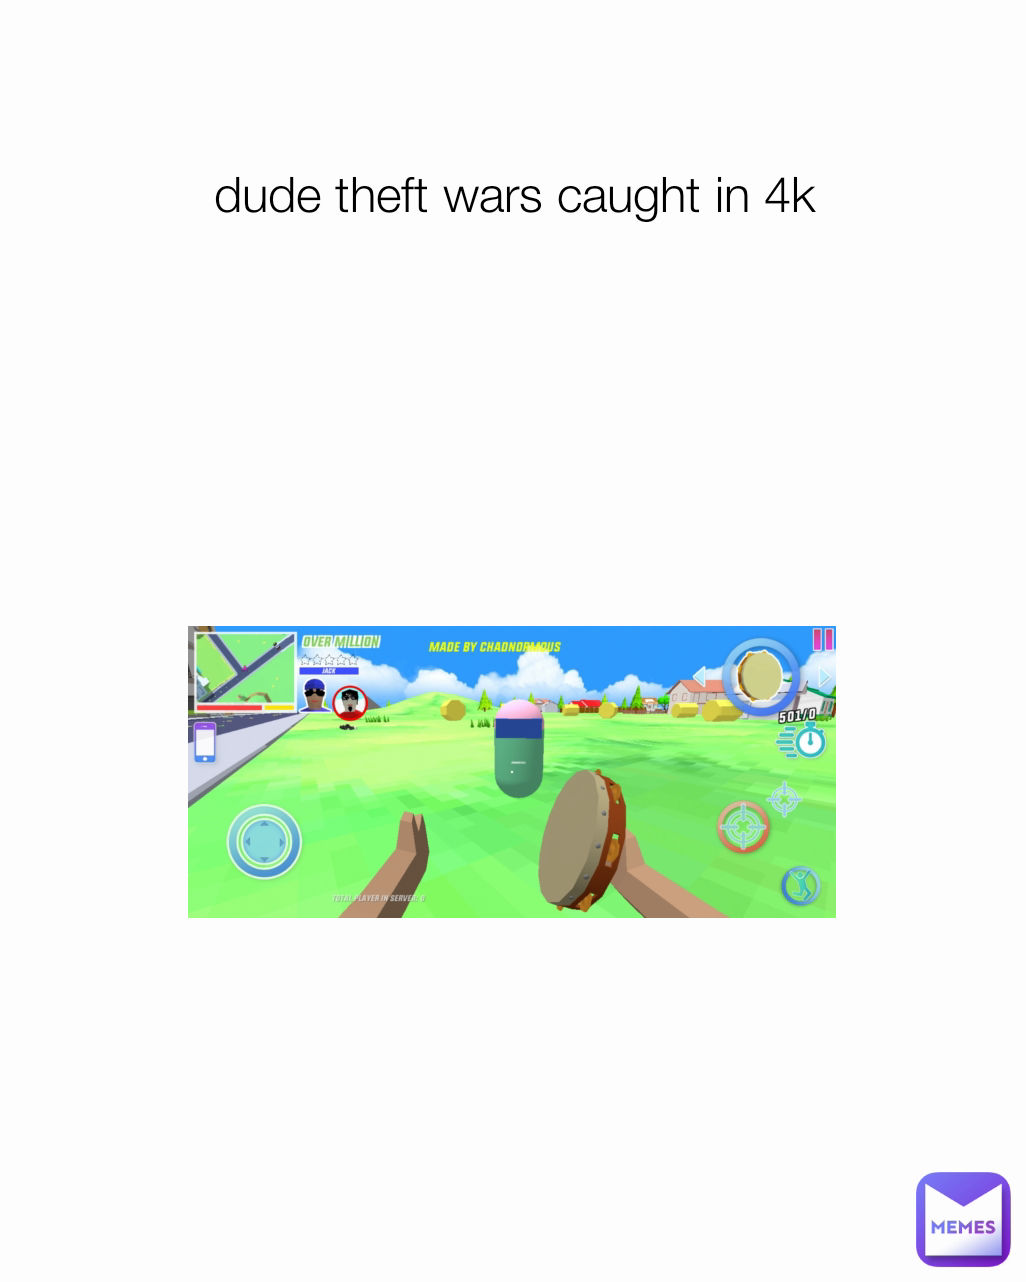 dude theft wars caught in 4k